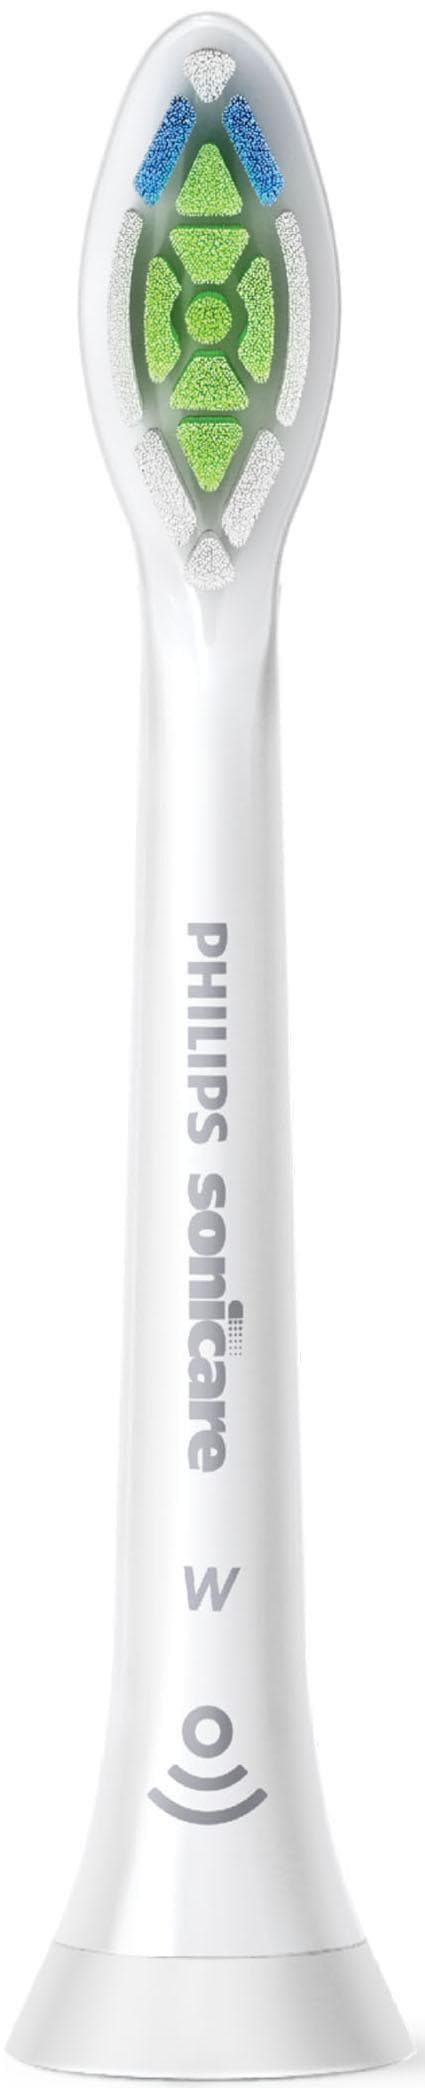 Philips Sonicare Aufsteckbürsten »W2 Optimal White Standard«, mit der Bürstenkopferkennung, Standardgröße